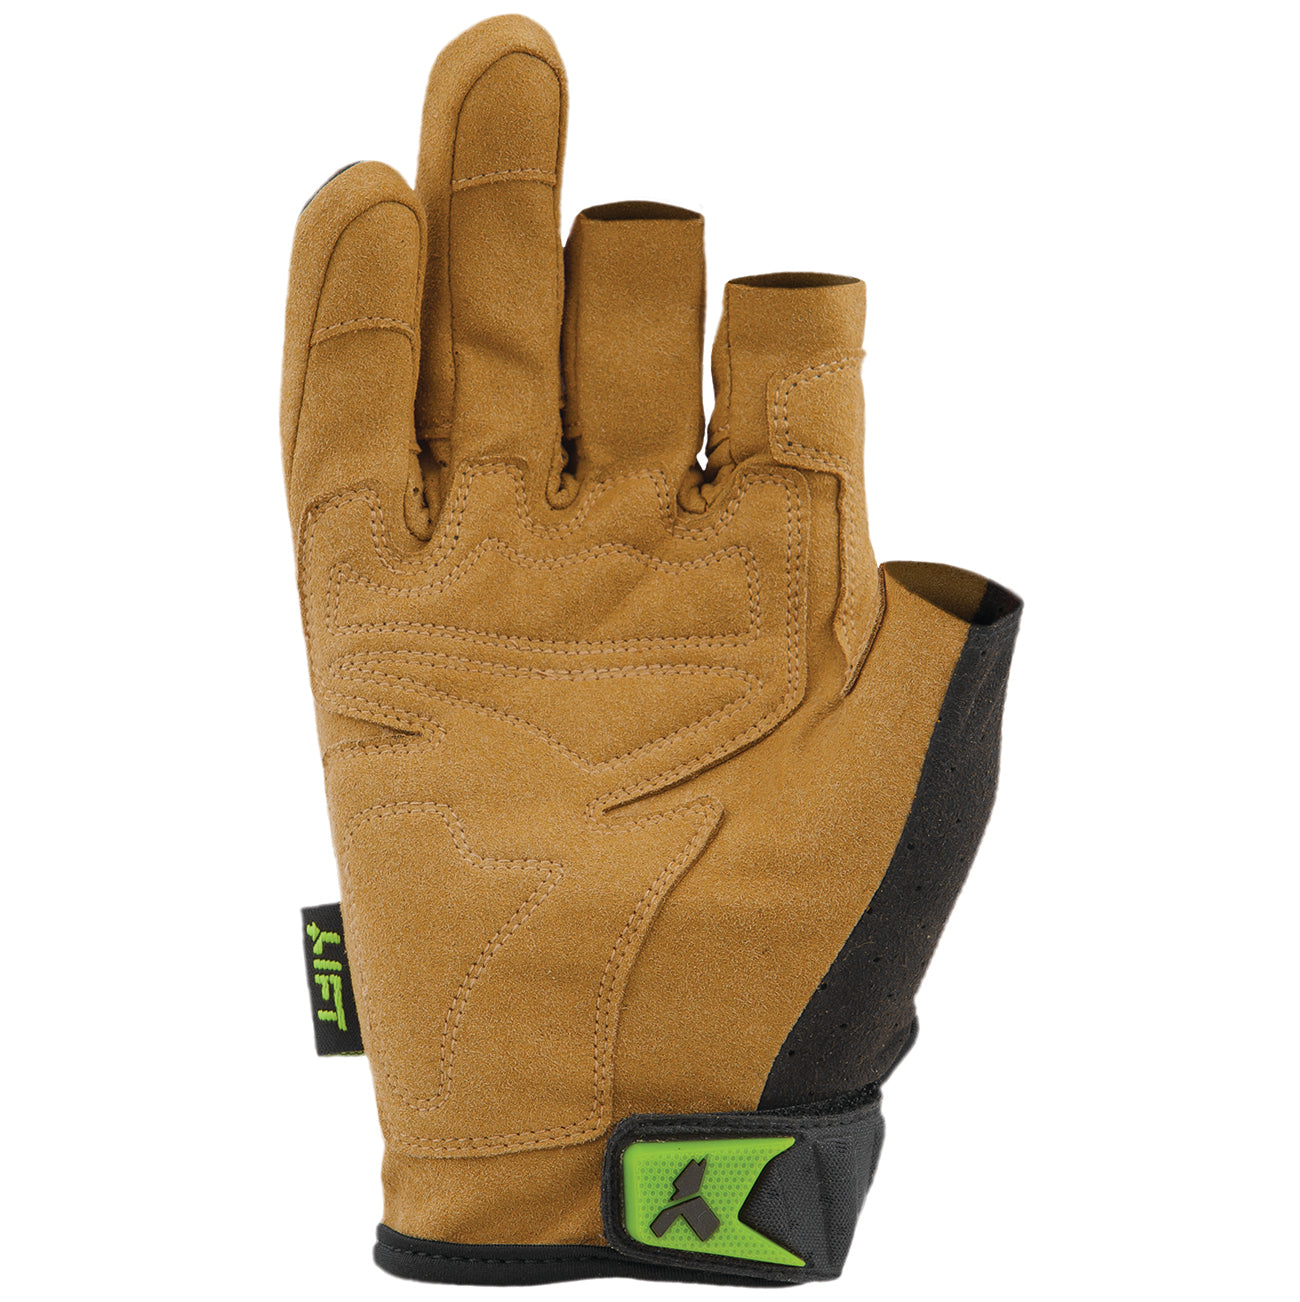 LIFT Safety - FRAMED Glove (Brown/Black)